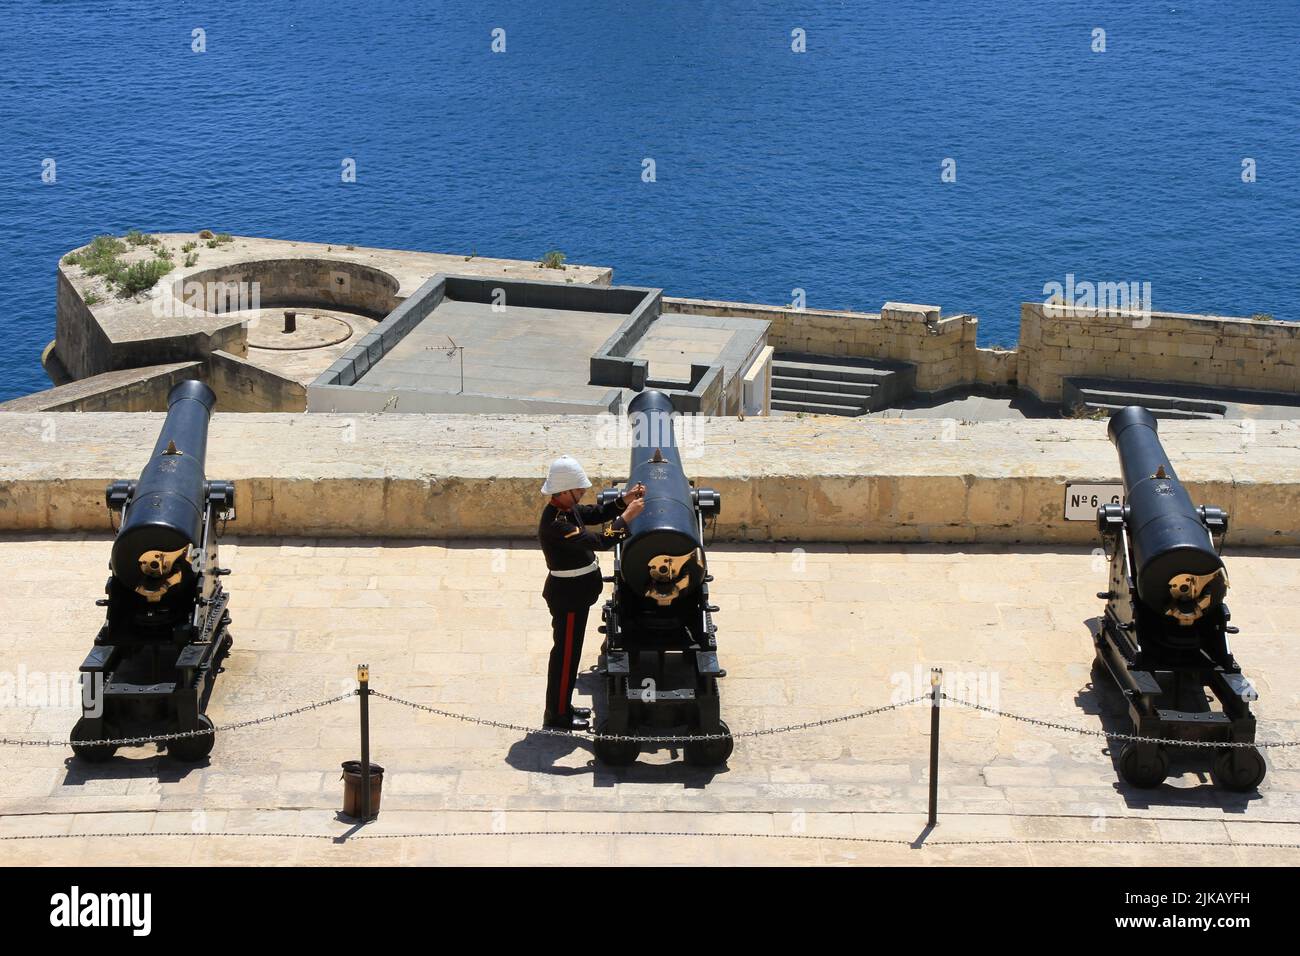 Aspects of Valletta, Malta Stock Photo